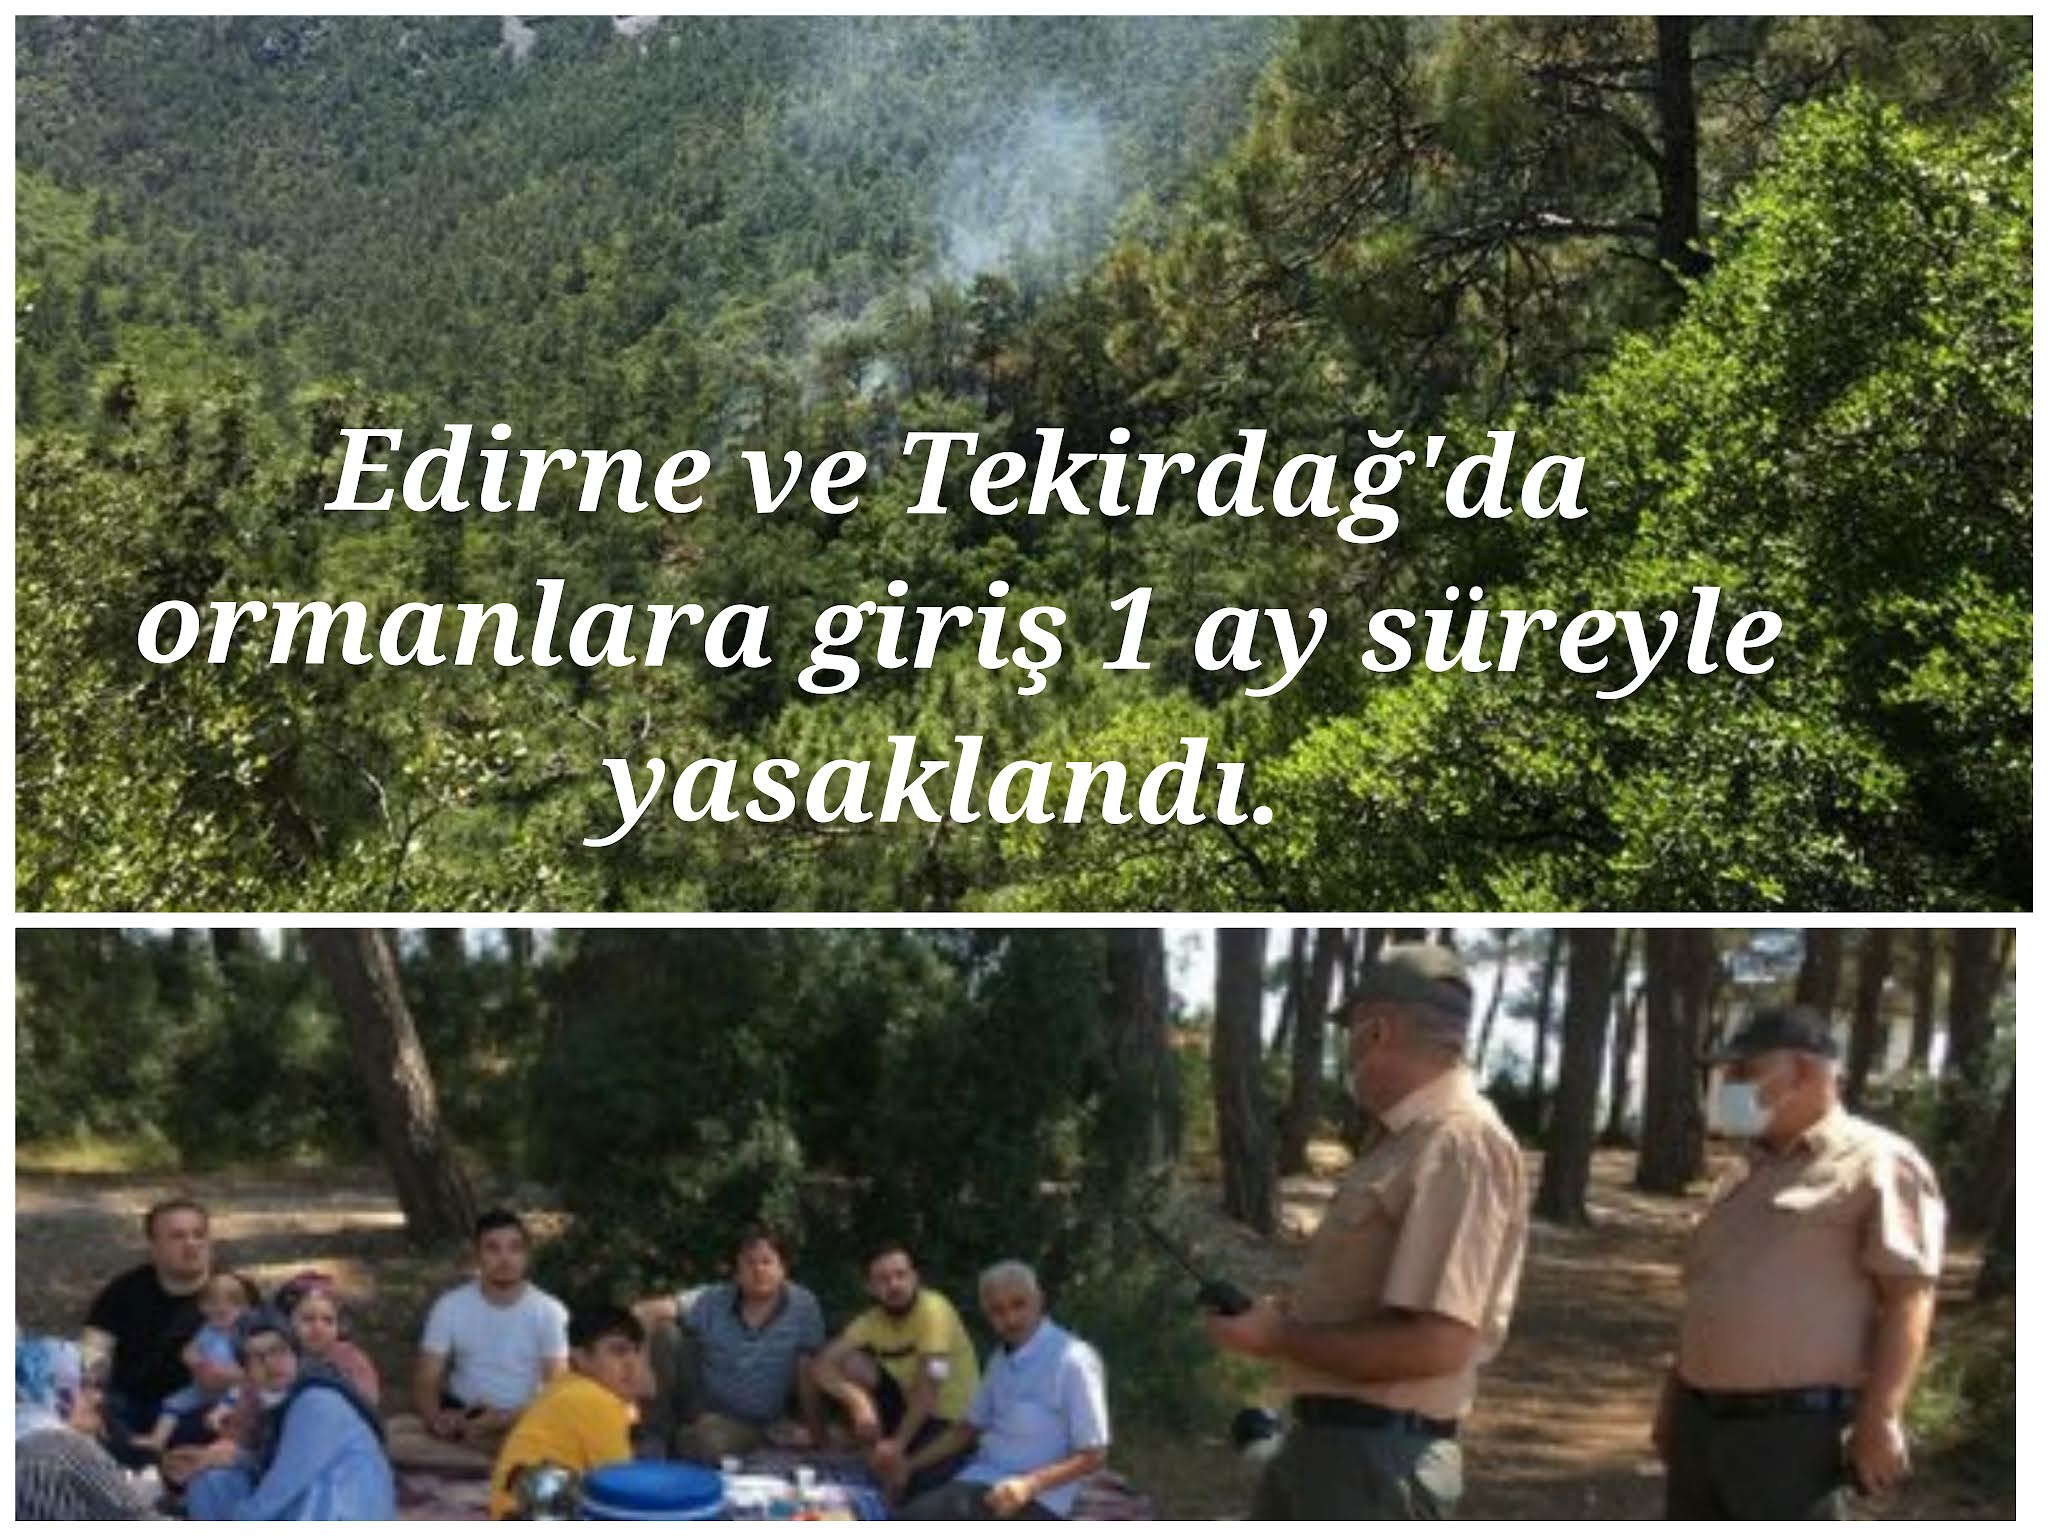 Edirne ve Tekirdağ'da ormanlara giriş 1 ay süreyle yasaklandı